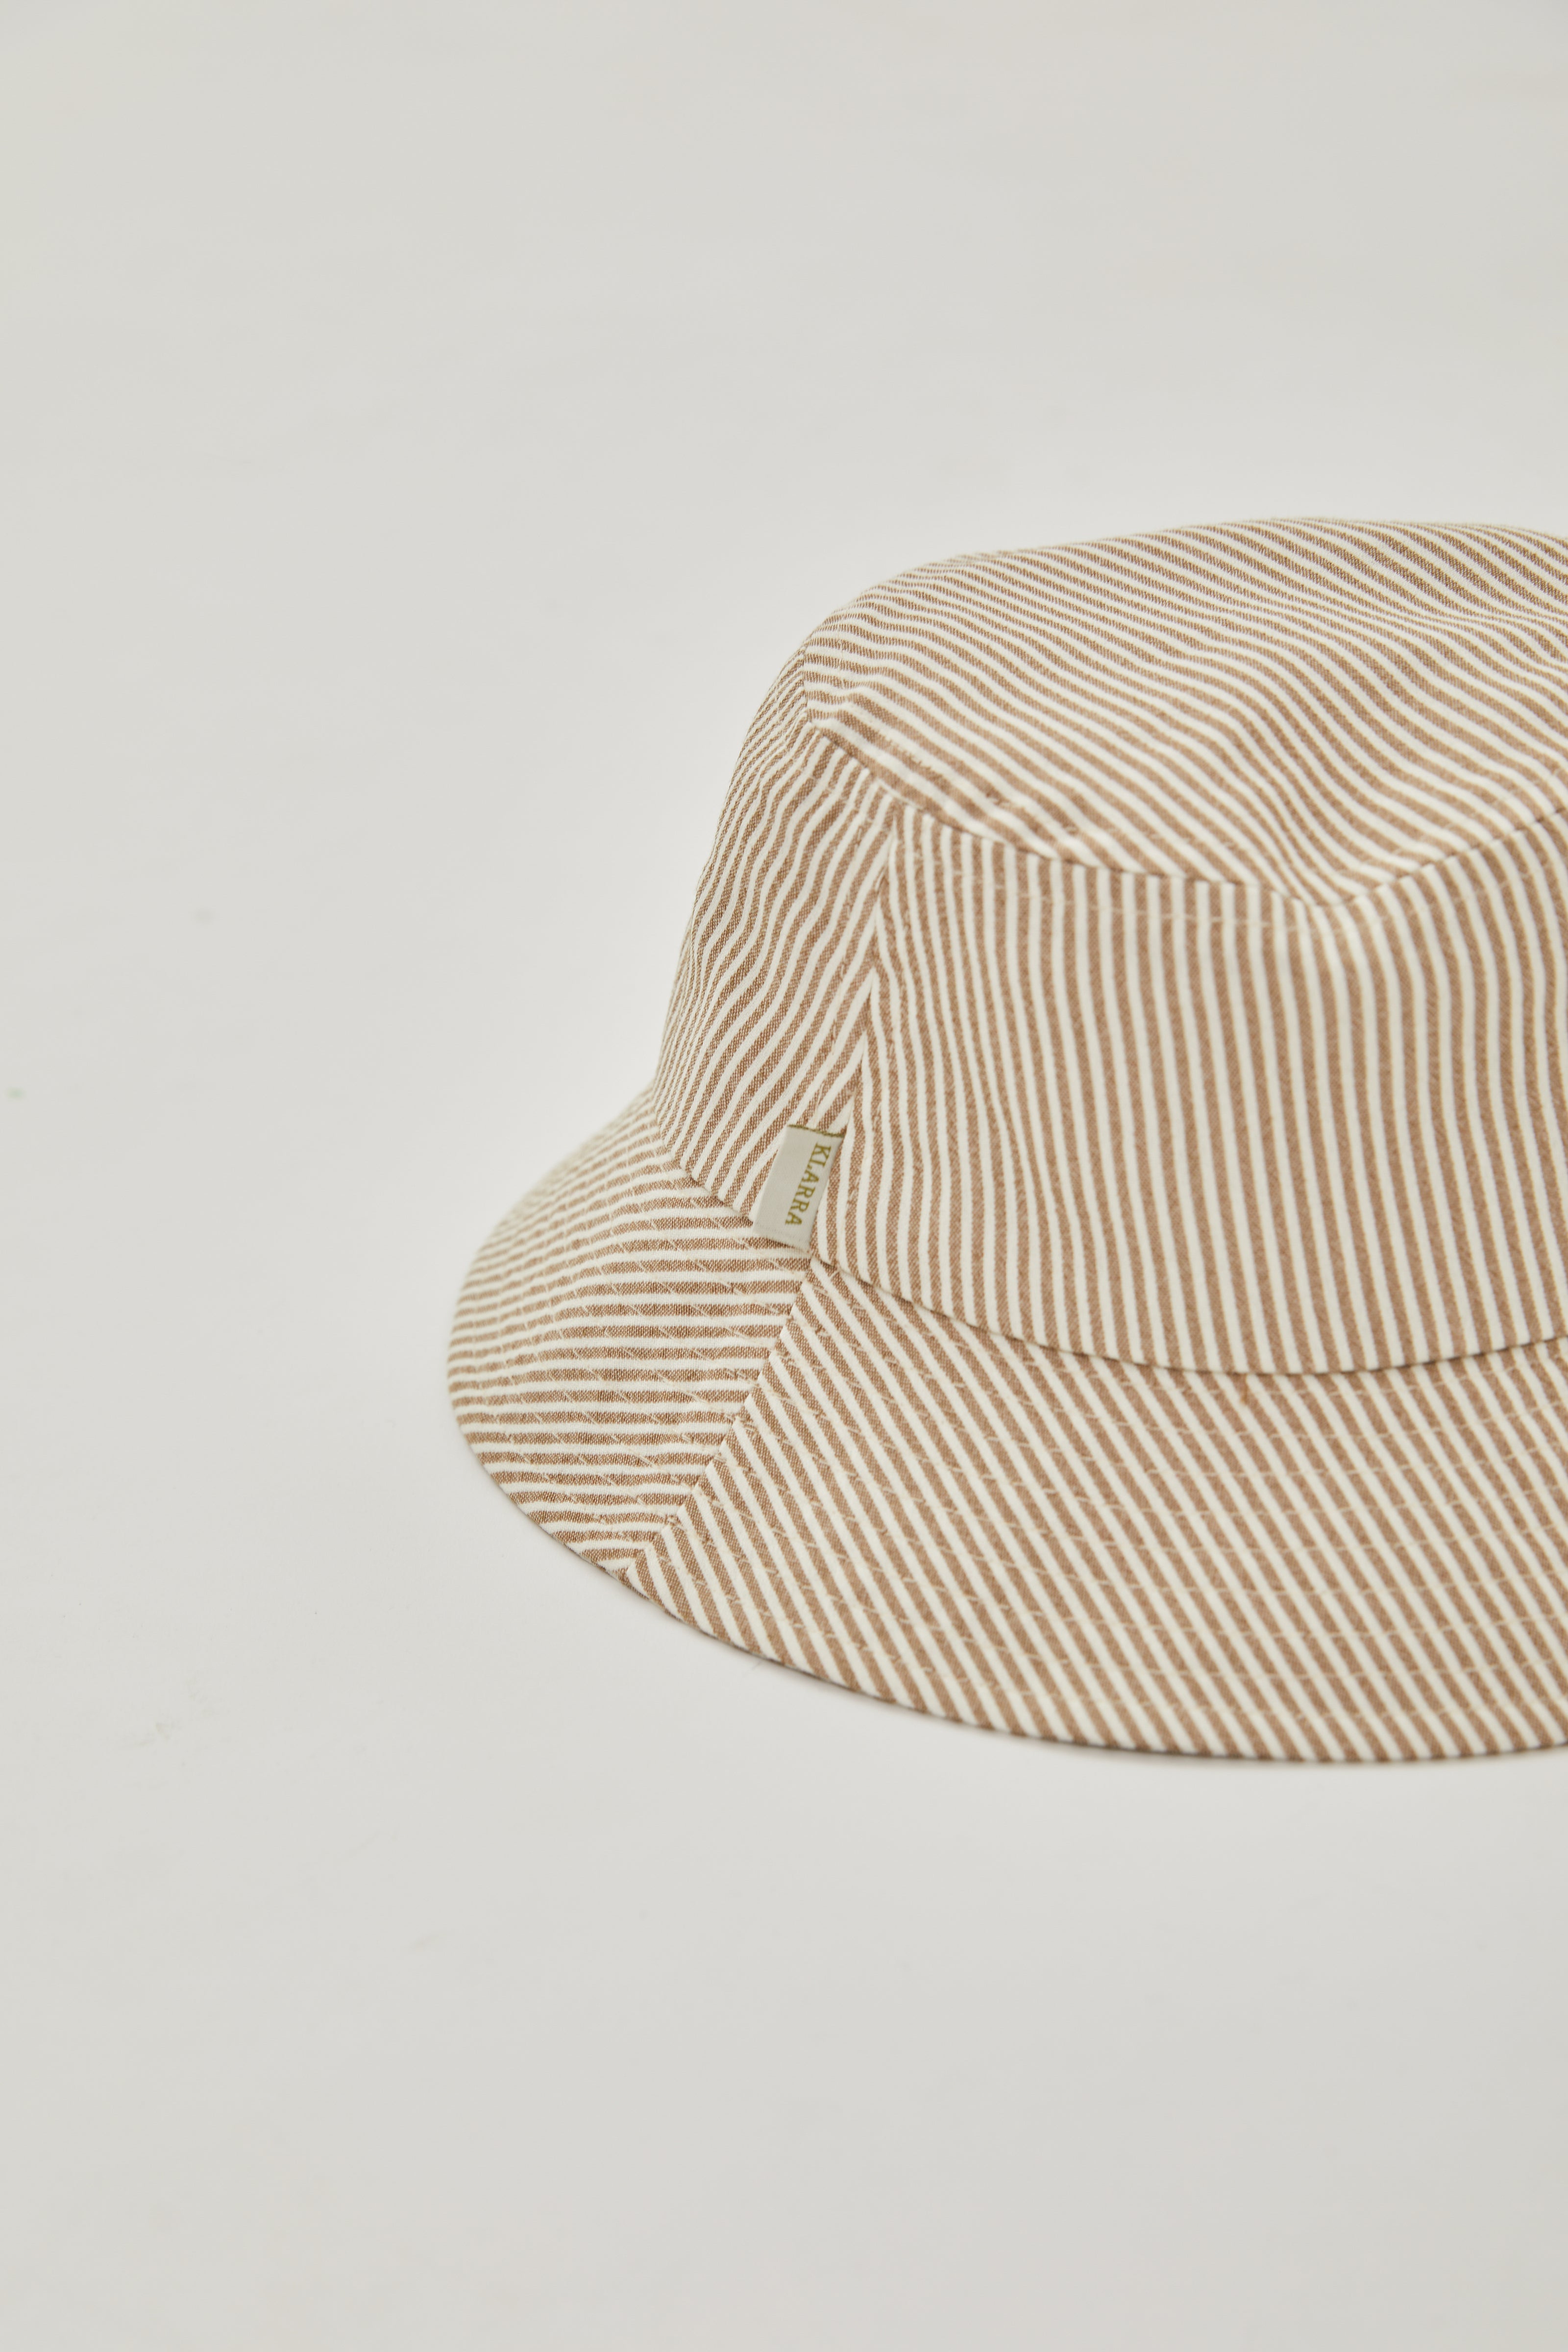 Bucket Hat in Stripe Brown